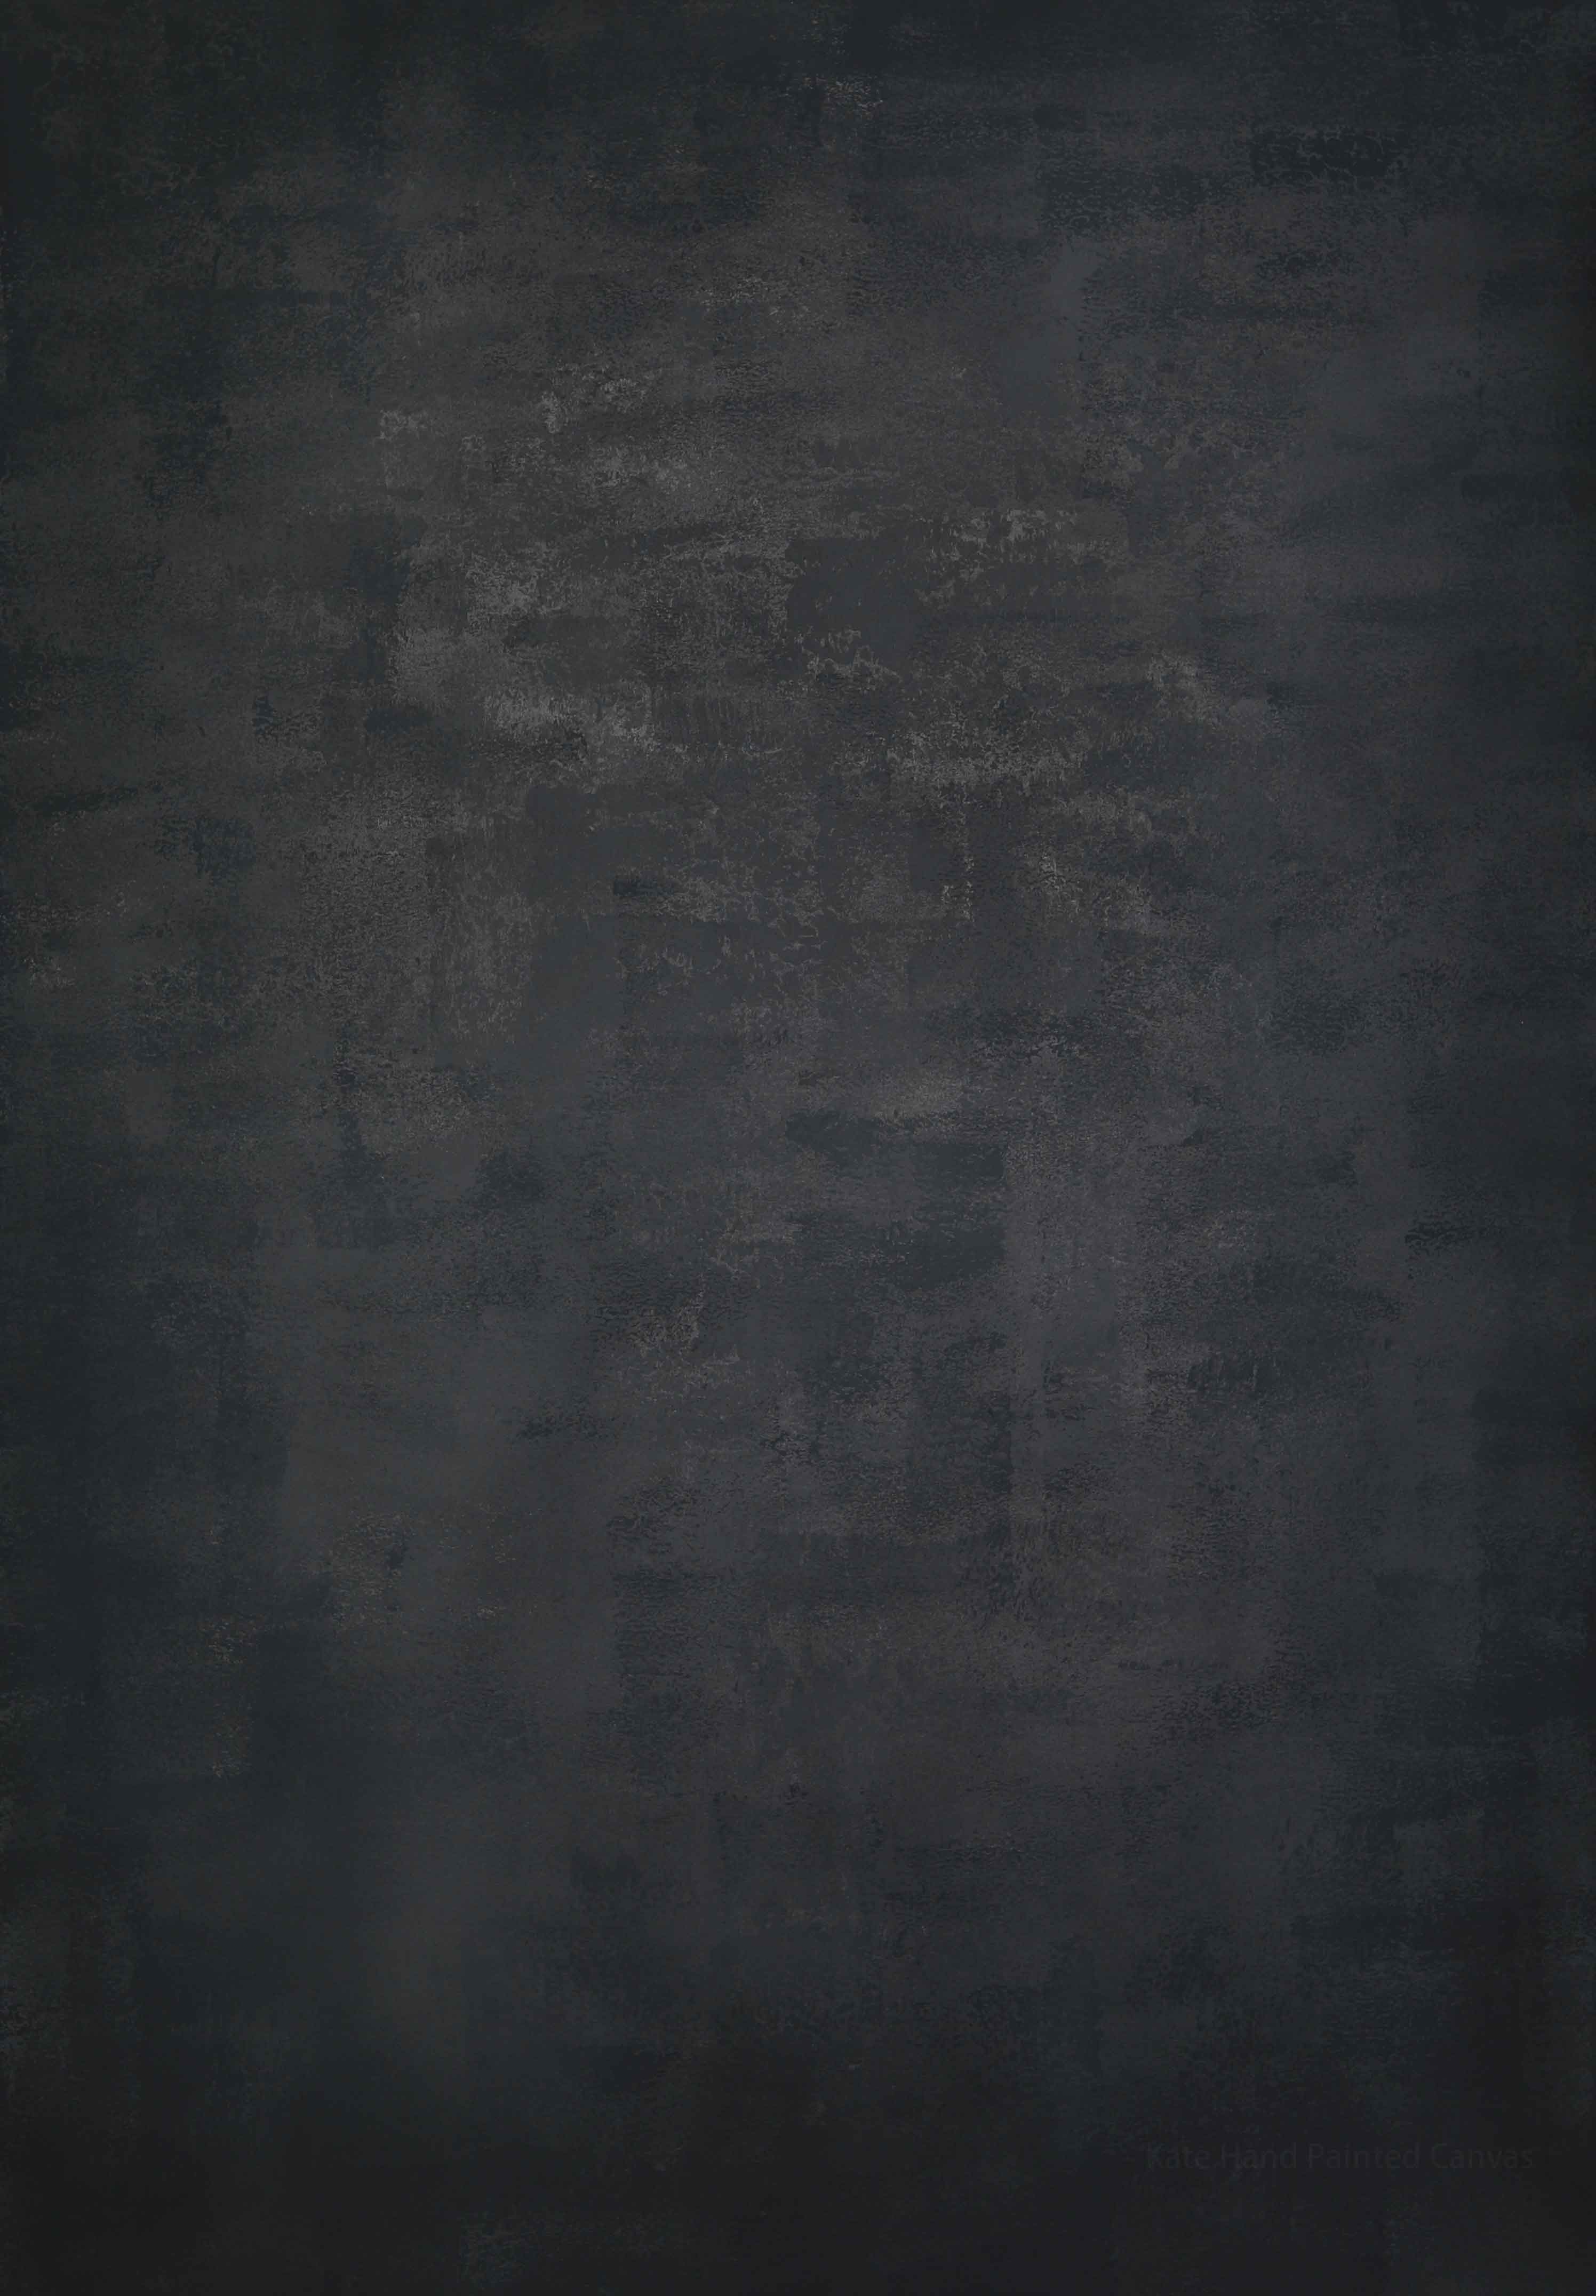 Kate Handgemalt Abstrakt Texture grauen Farbspray  Hintergrund Leinwand